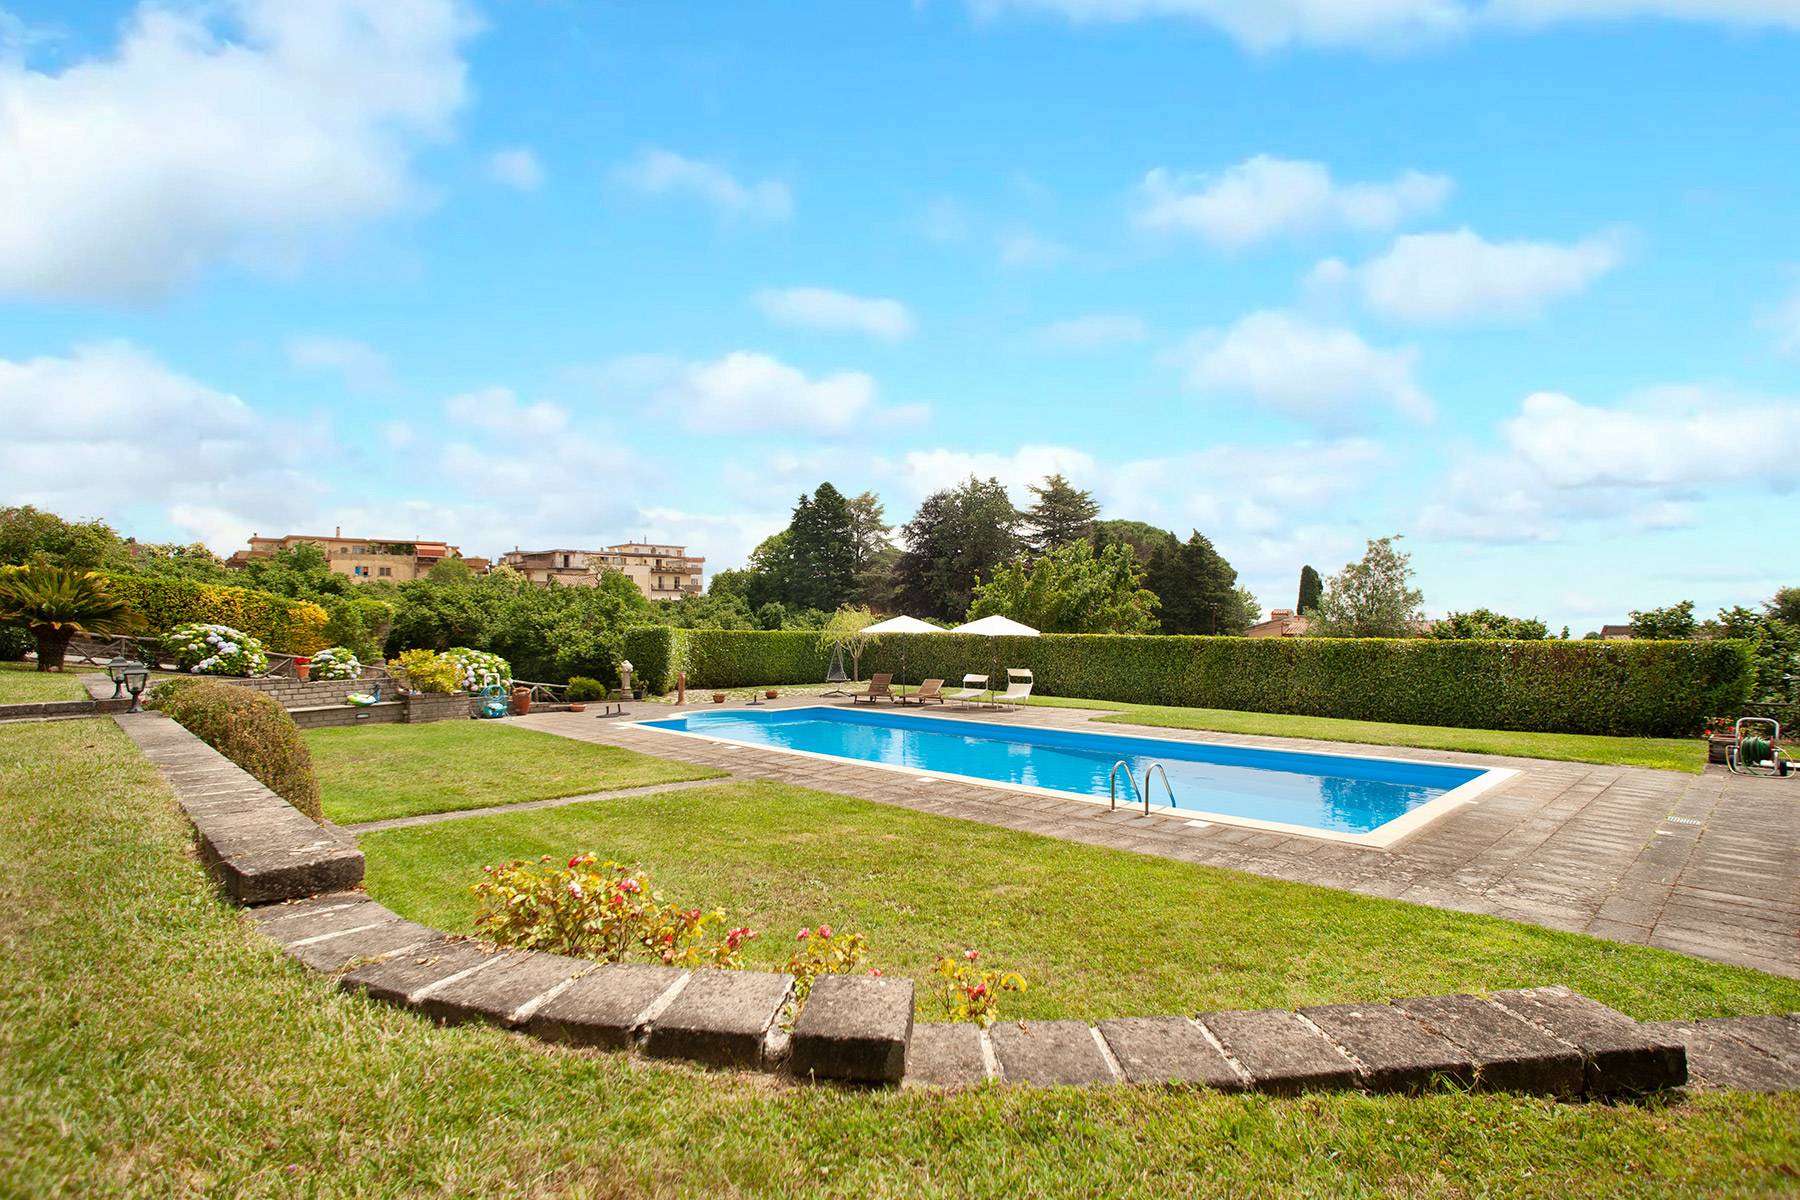 Villa in Vendita a Ronciglione: 5 locali, 500 mq - Foto 5